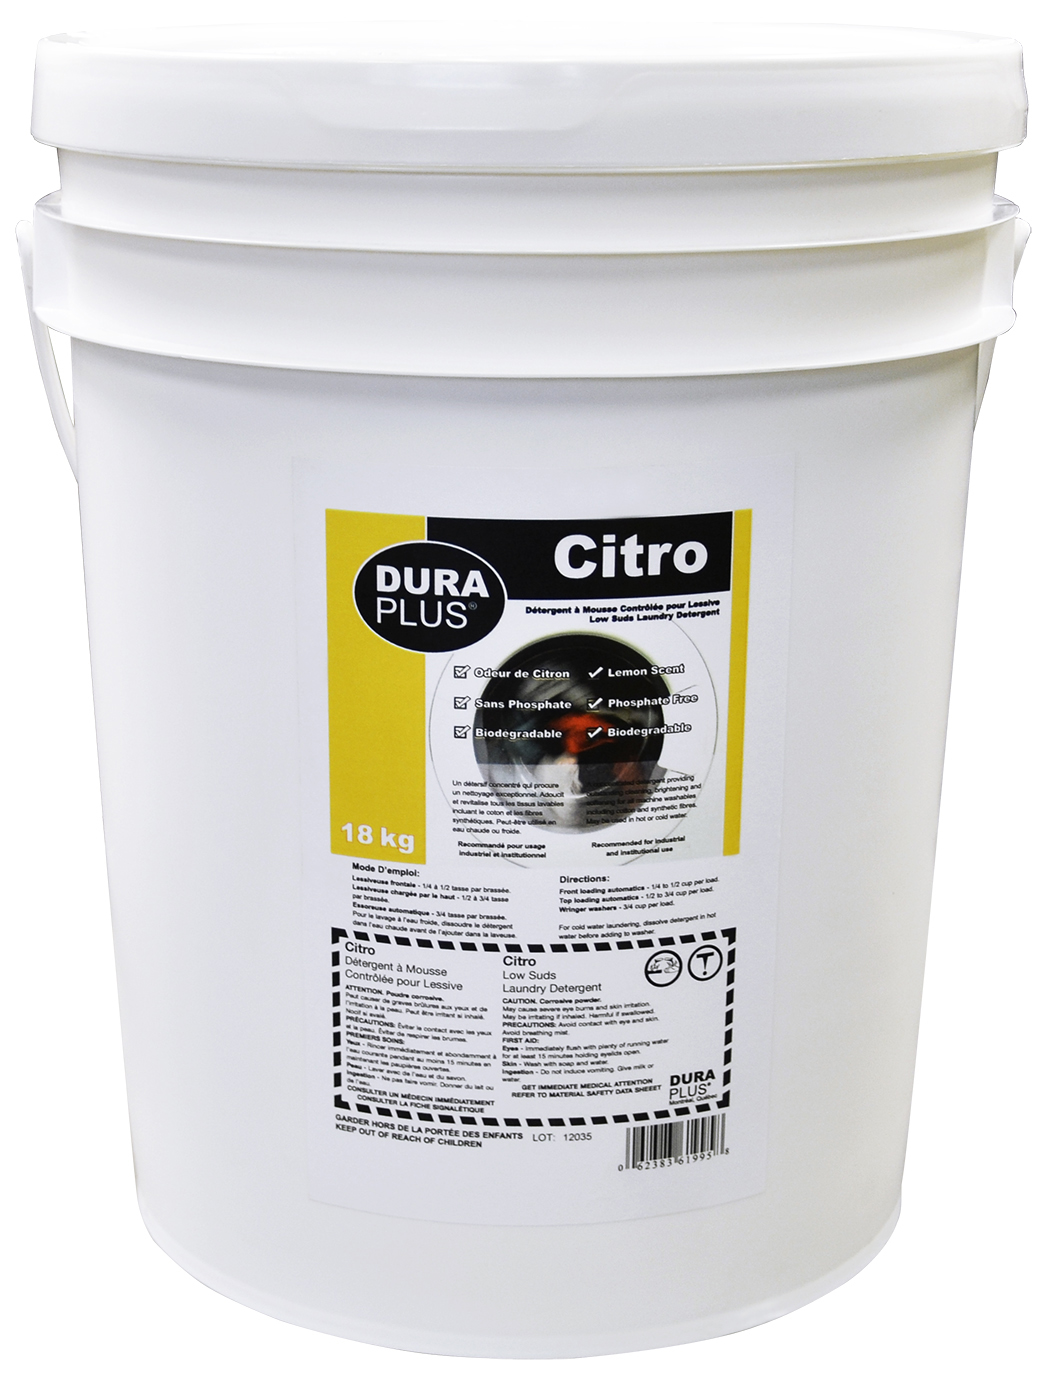 18kg Dura Plus® Citro™ Low-Suds Laundry Detergent, Powder, Concentrate